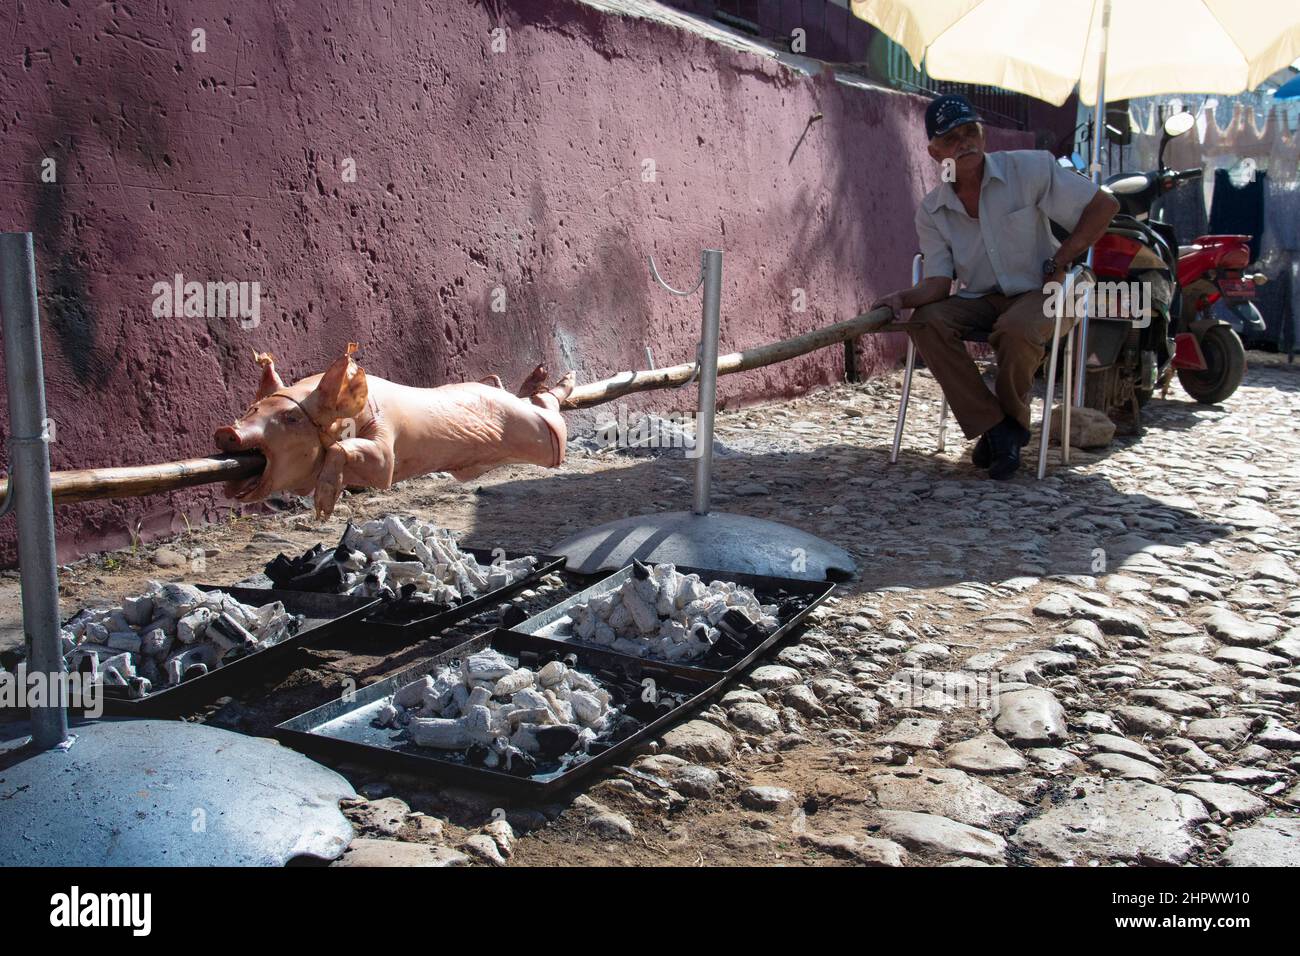 Cerdo en una escupir que es cocido en caldos por un hombre en un evento para la familia y amigo en Trinidad, Cuba. Foto de stock